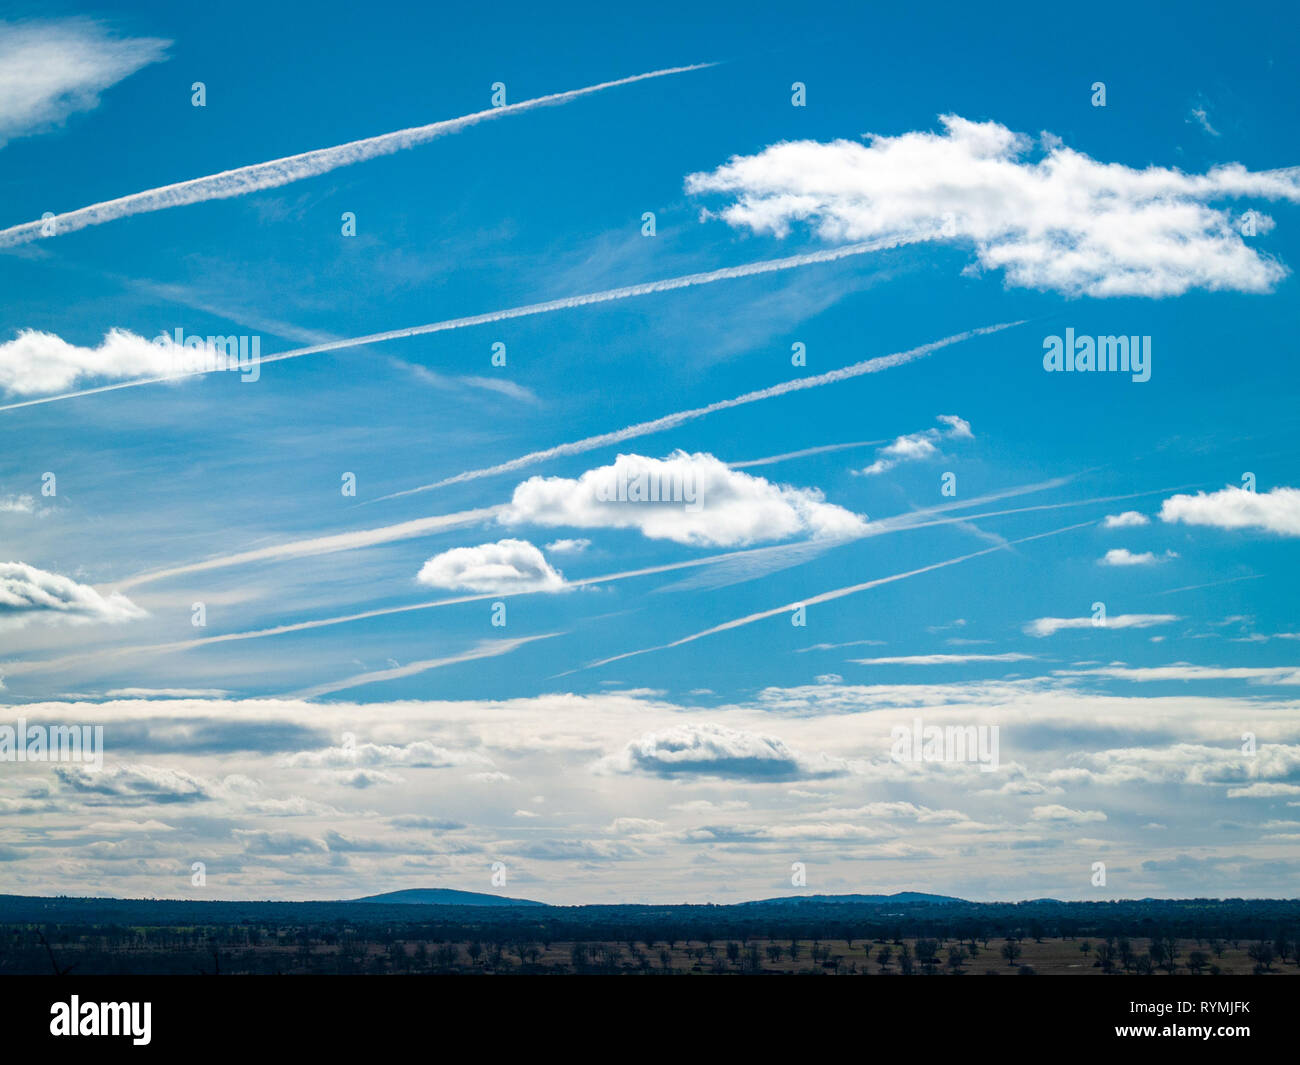 Les traînées de condensation de vapeur ou chemtrails des avions dans le ciel Banque D'Images